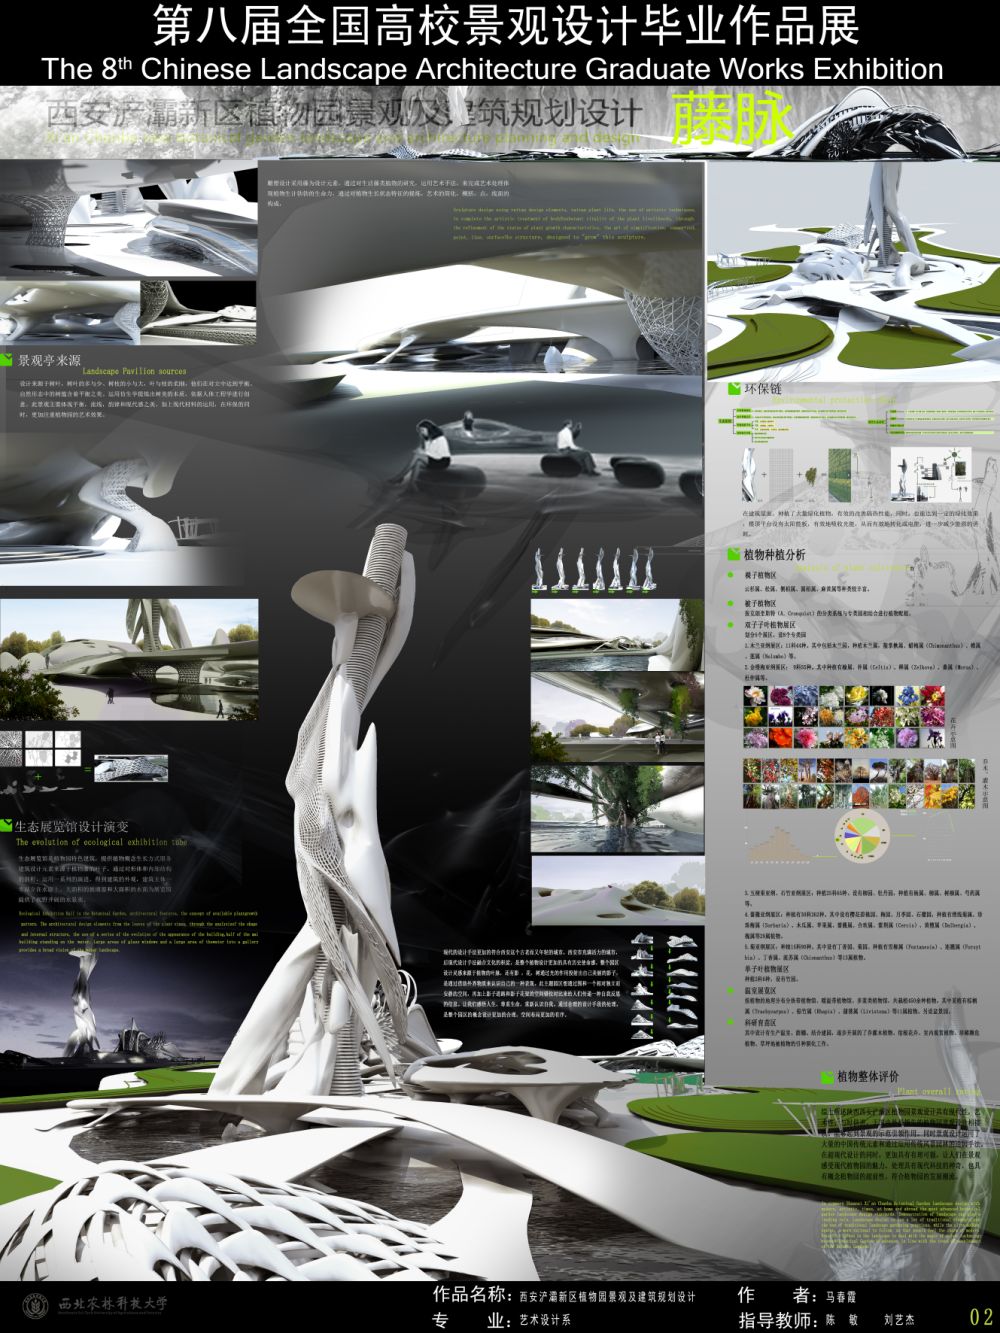 西安浐灞新区植物园景观及建筑规划设计-2